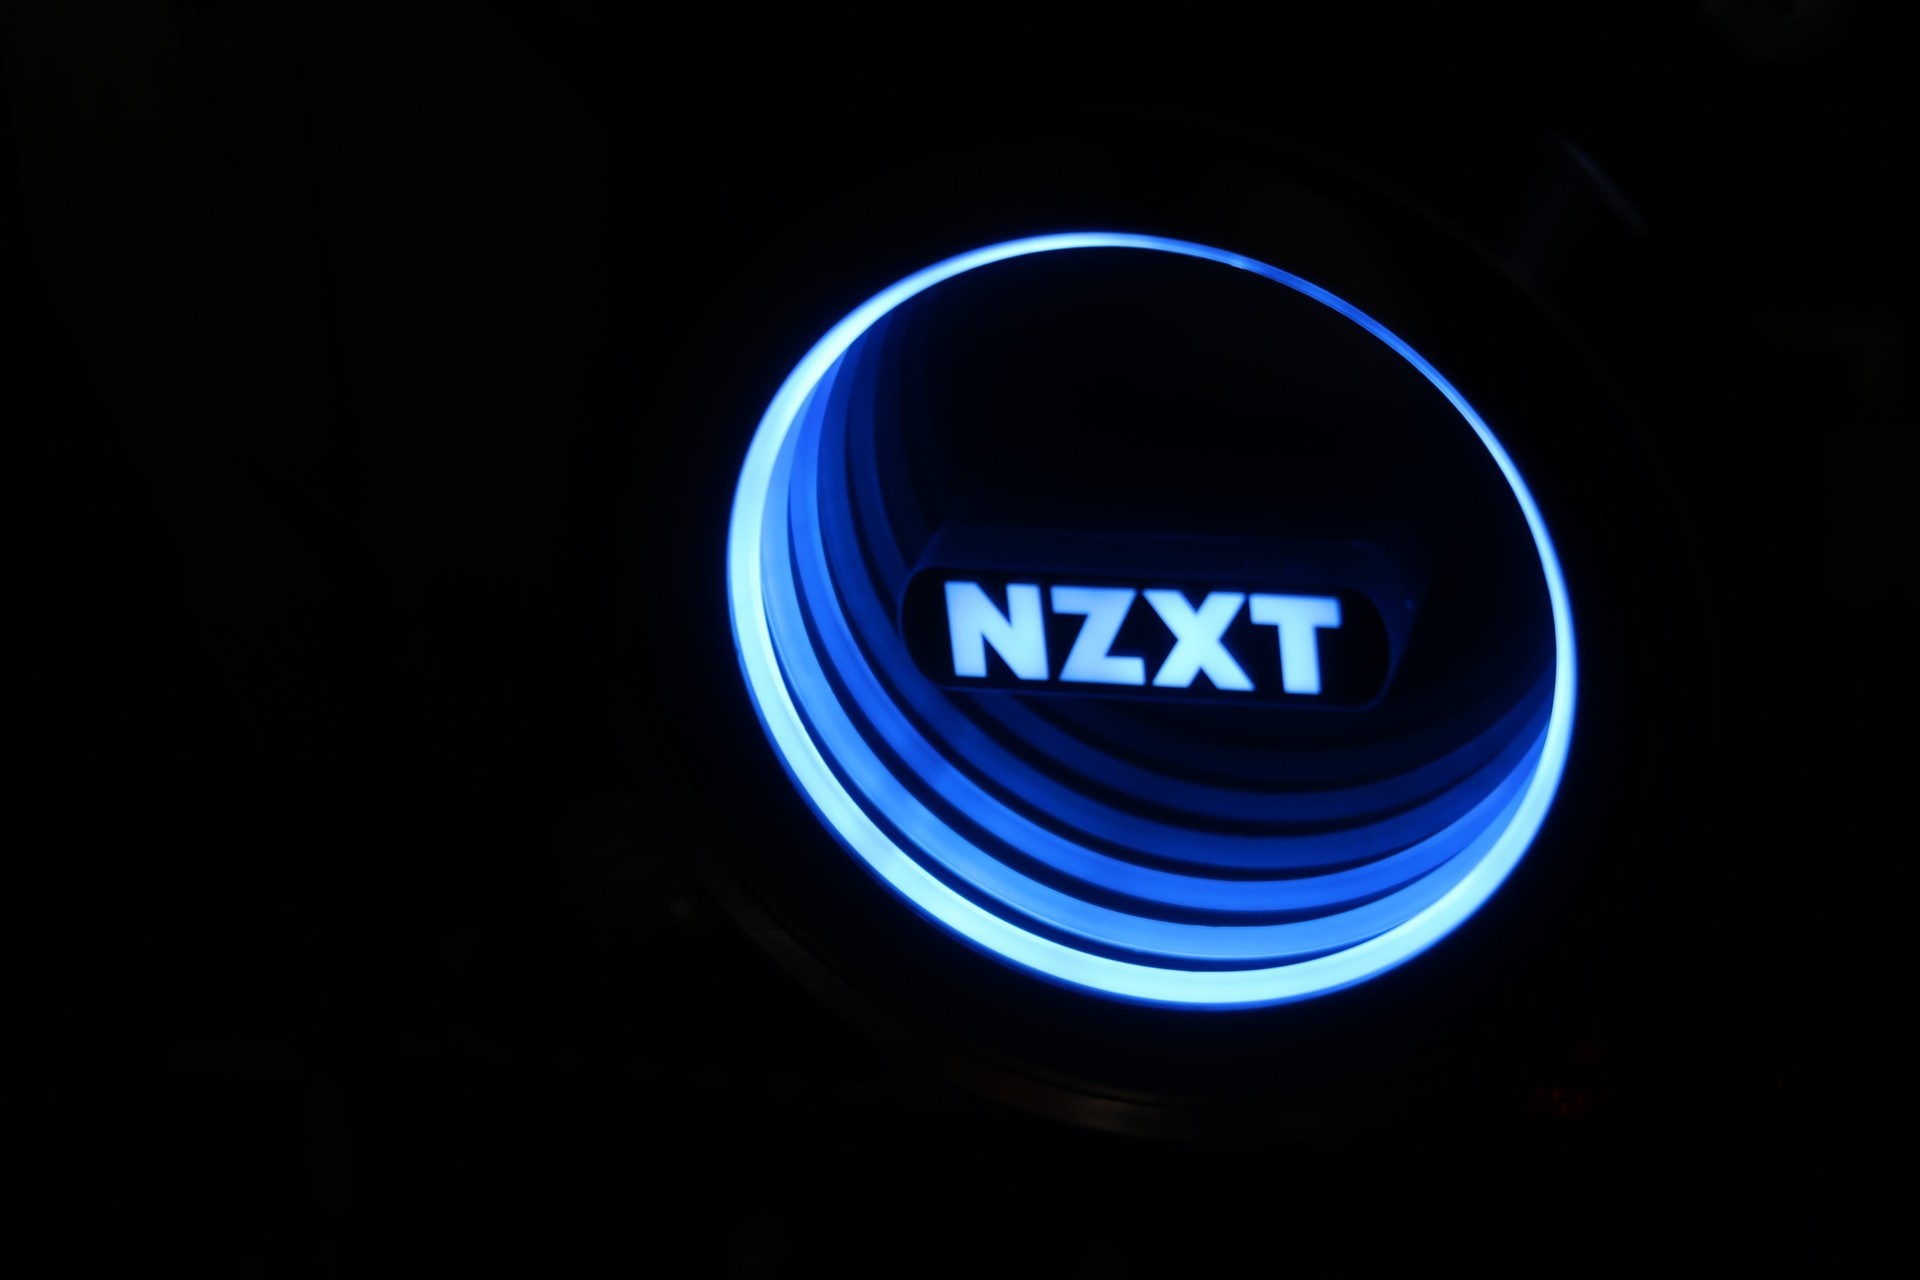 新世代は旧世代を大きく超えよ レビュー Nzxt社 Kraken X52 美しいクーラーをレビュー